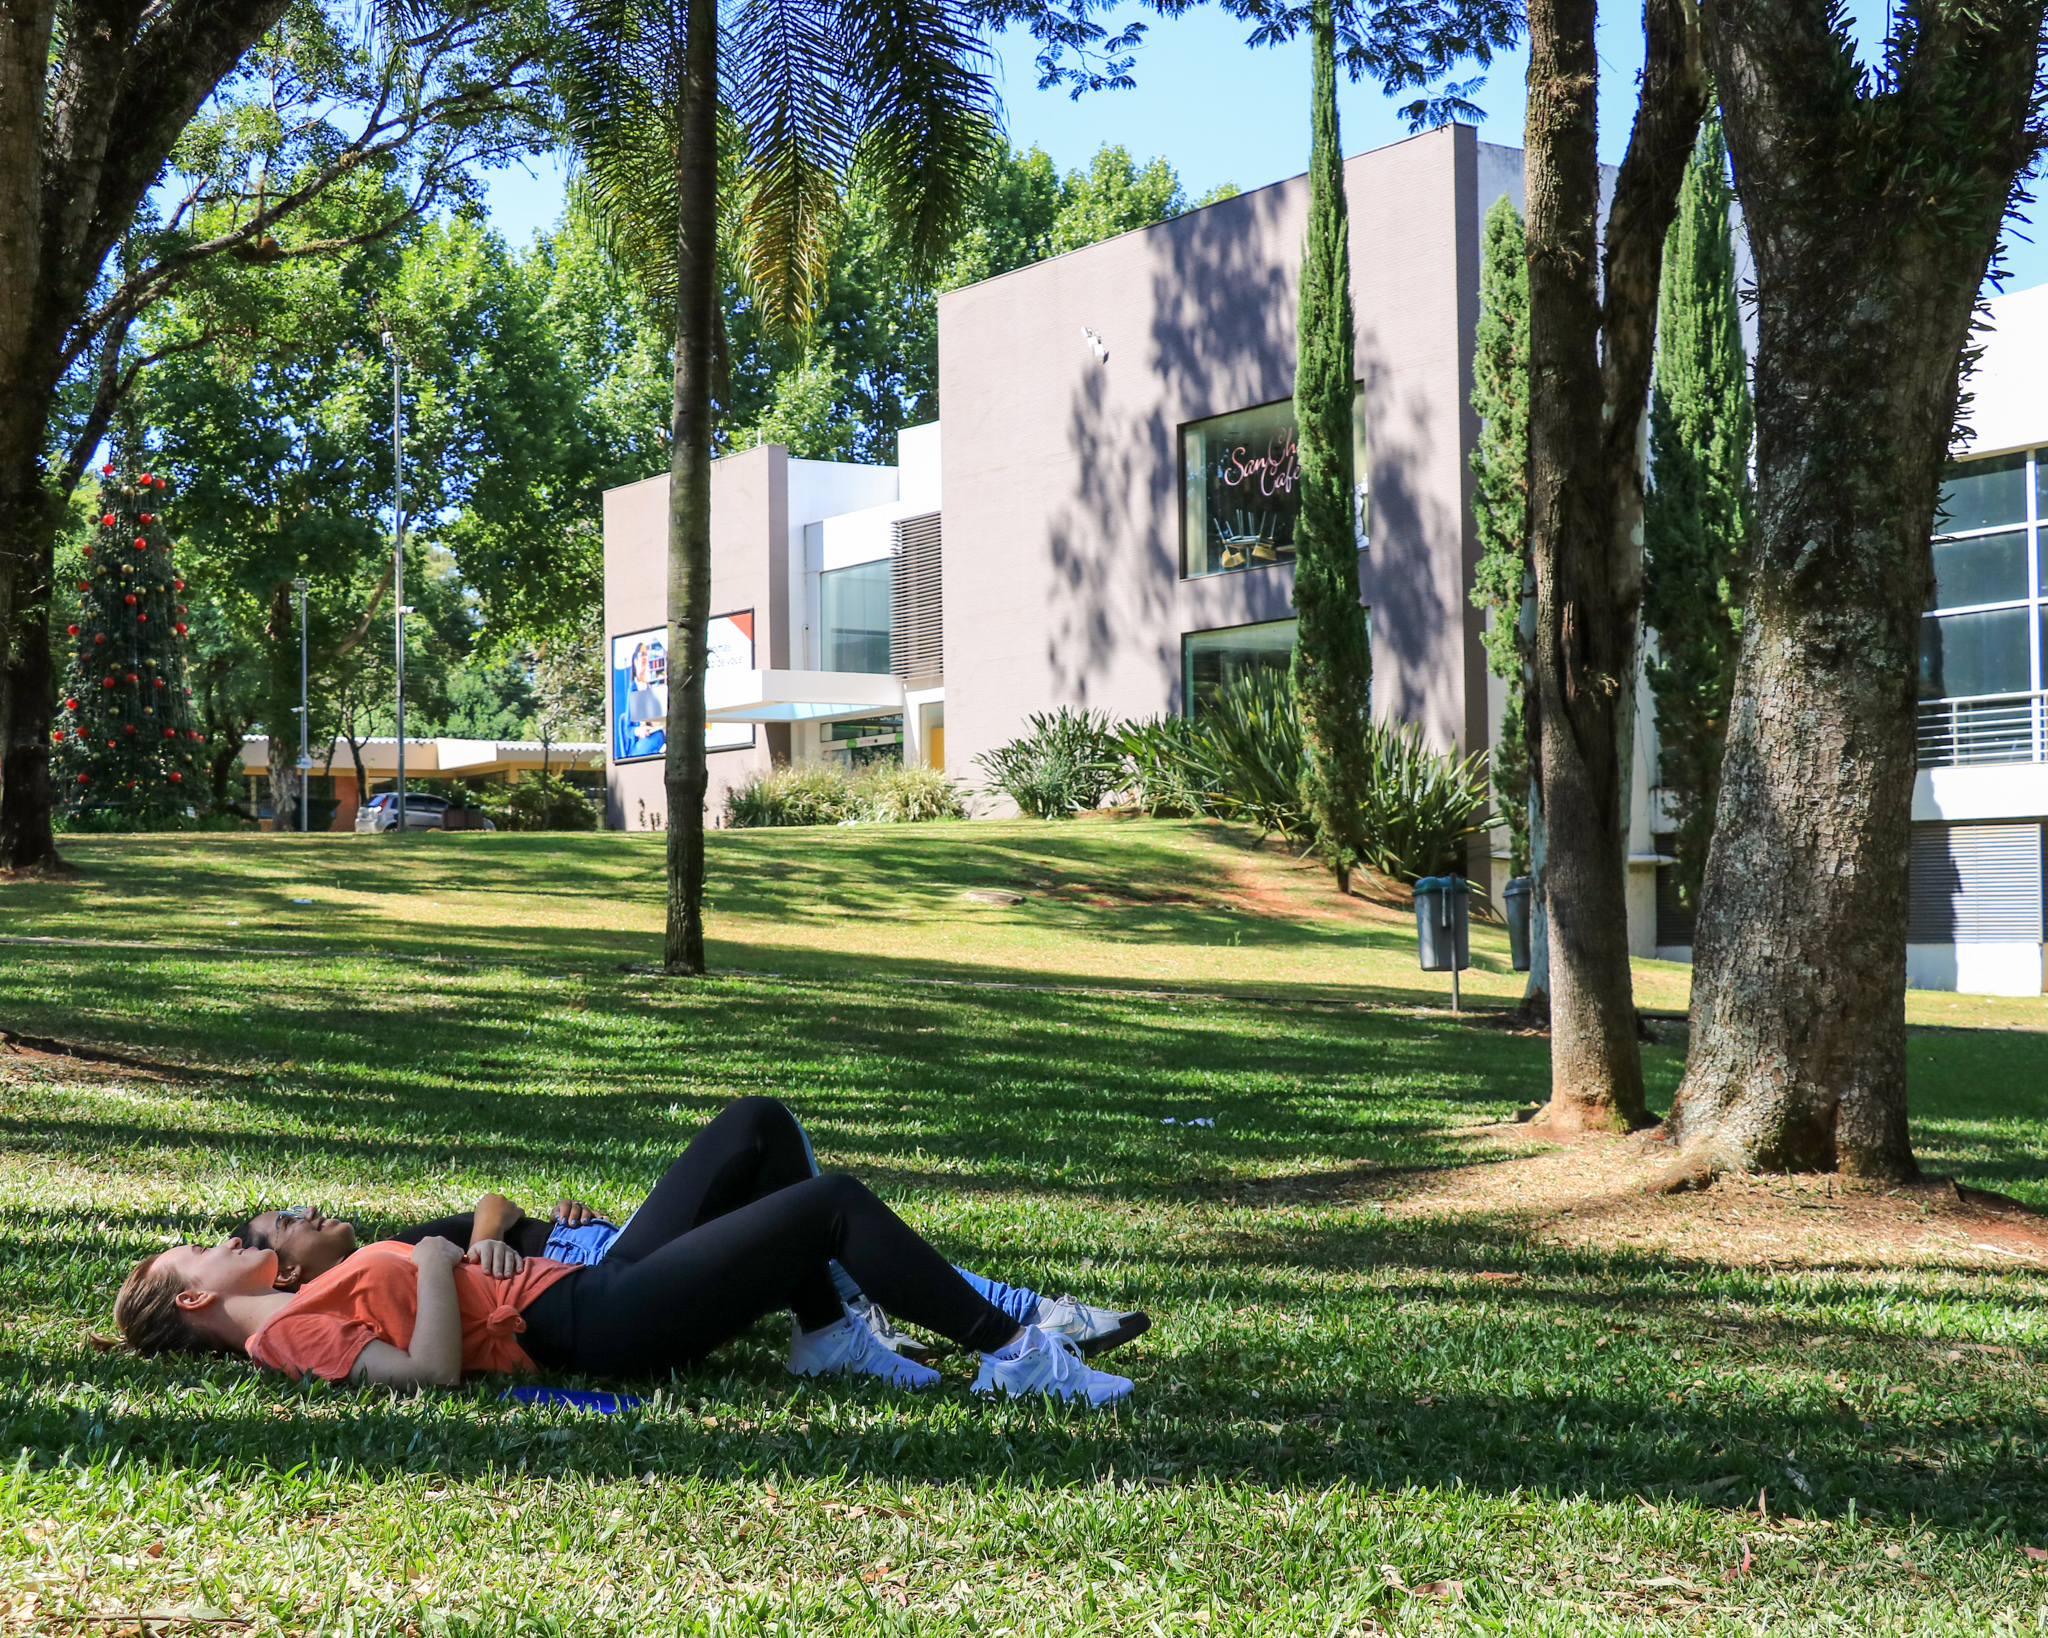 Duas pessoas deitadas em um gramado, na frente do centro de convivências da UPF, um prédio cinza e branco. Há algumas arvores.